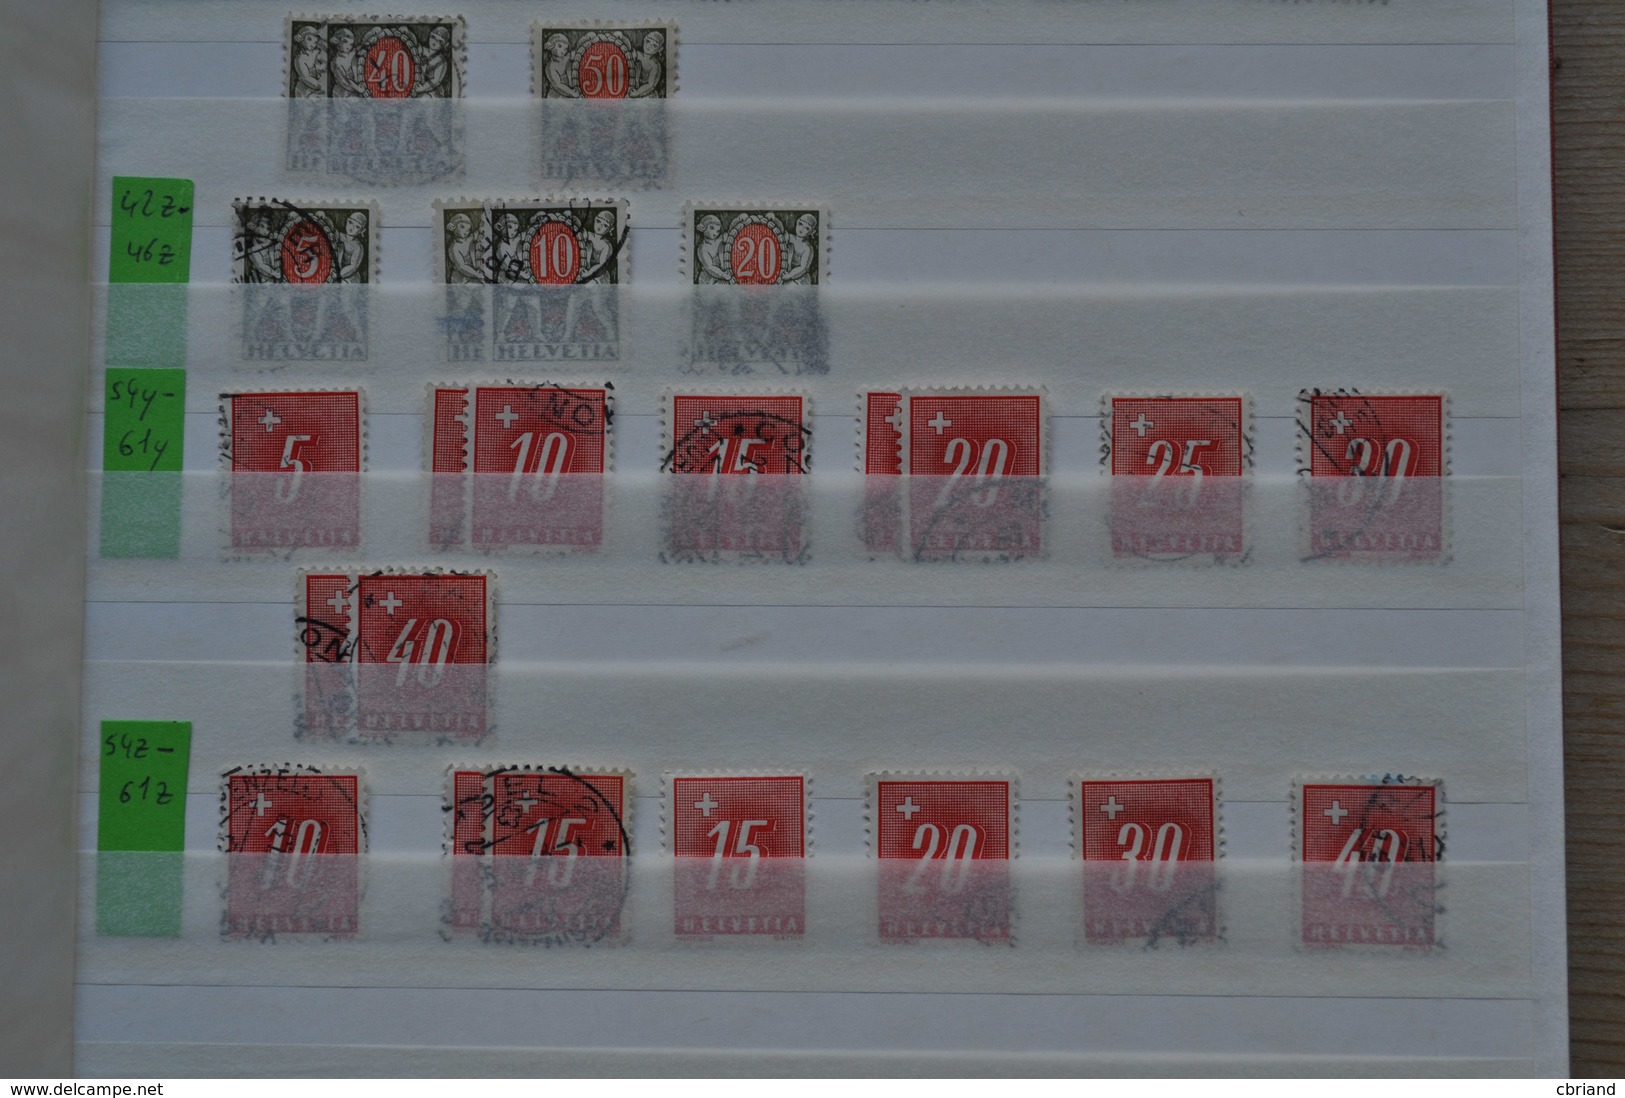 LIQUIDATION!!! Belle collection timbres de service, neuve et oblitérée